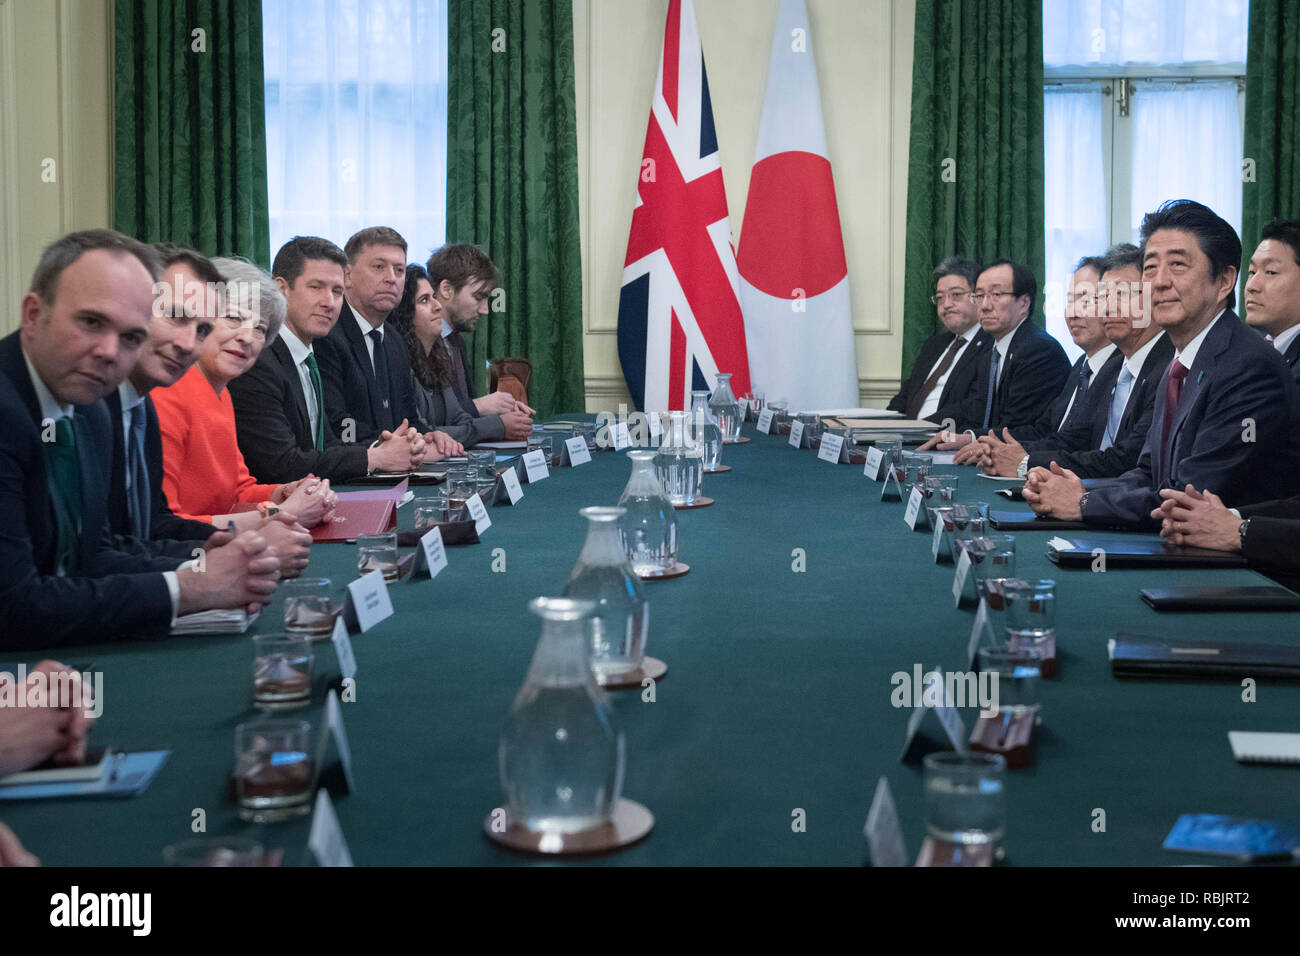 El Primer Ministro Teresa mayo con el Primer Ministro japonés Shinzo Abe en el número 10 de Downing Street, Londres, antes de una reunión bilateral. Foto de stock